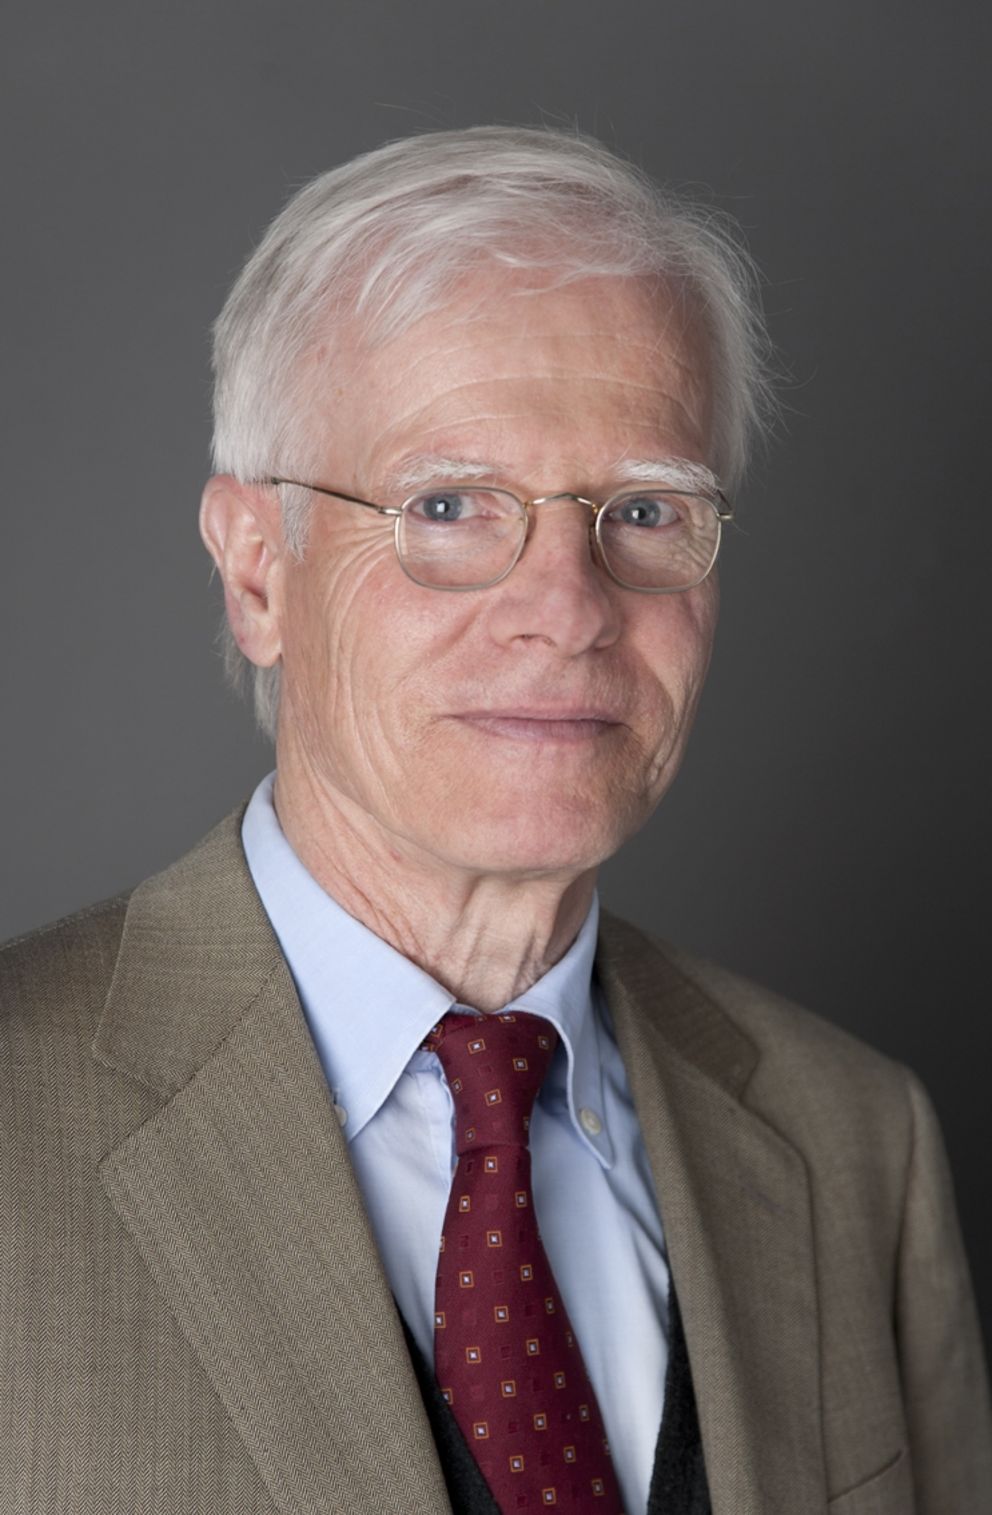 Prof. Dr. Ludwig Siep